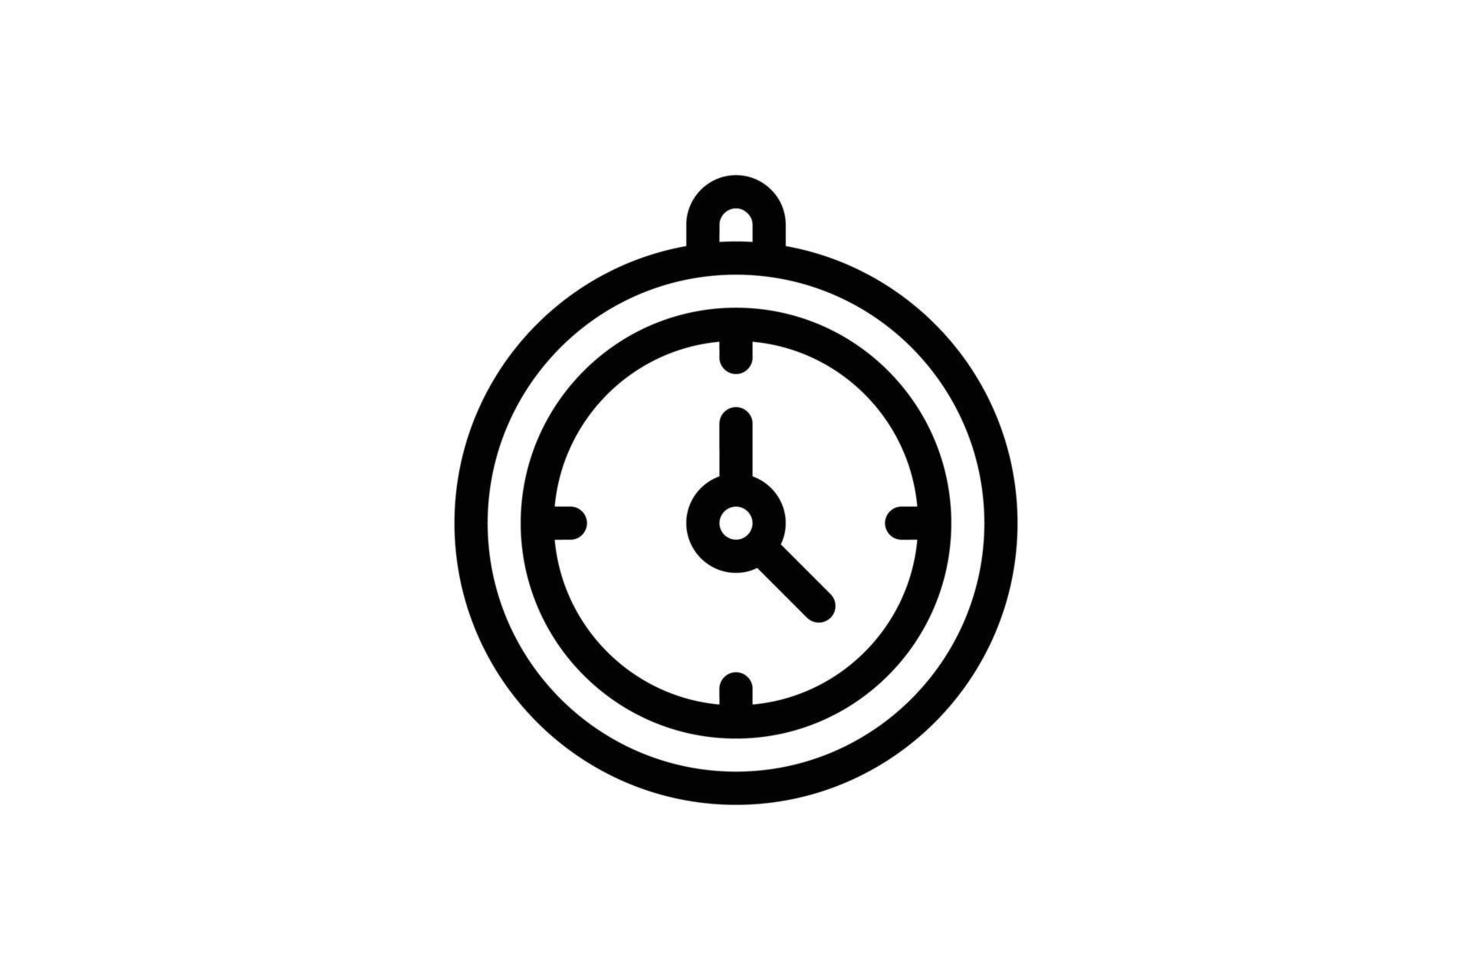 stile della linea di avvio dell'icona dell'orologio da parete gratuito vettore